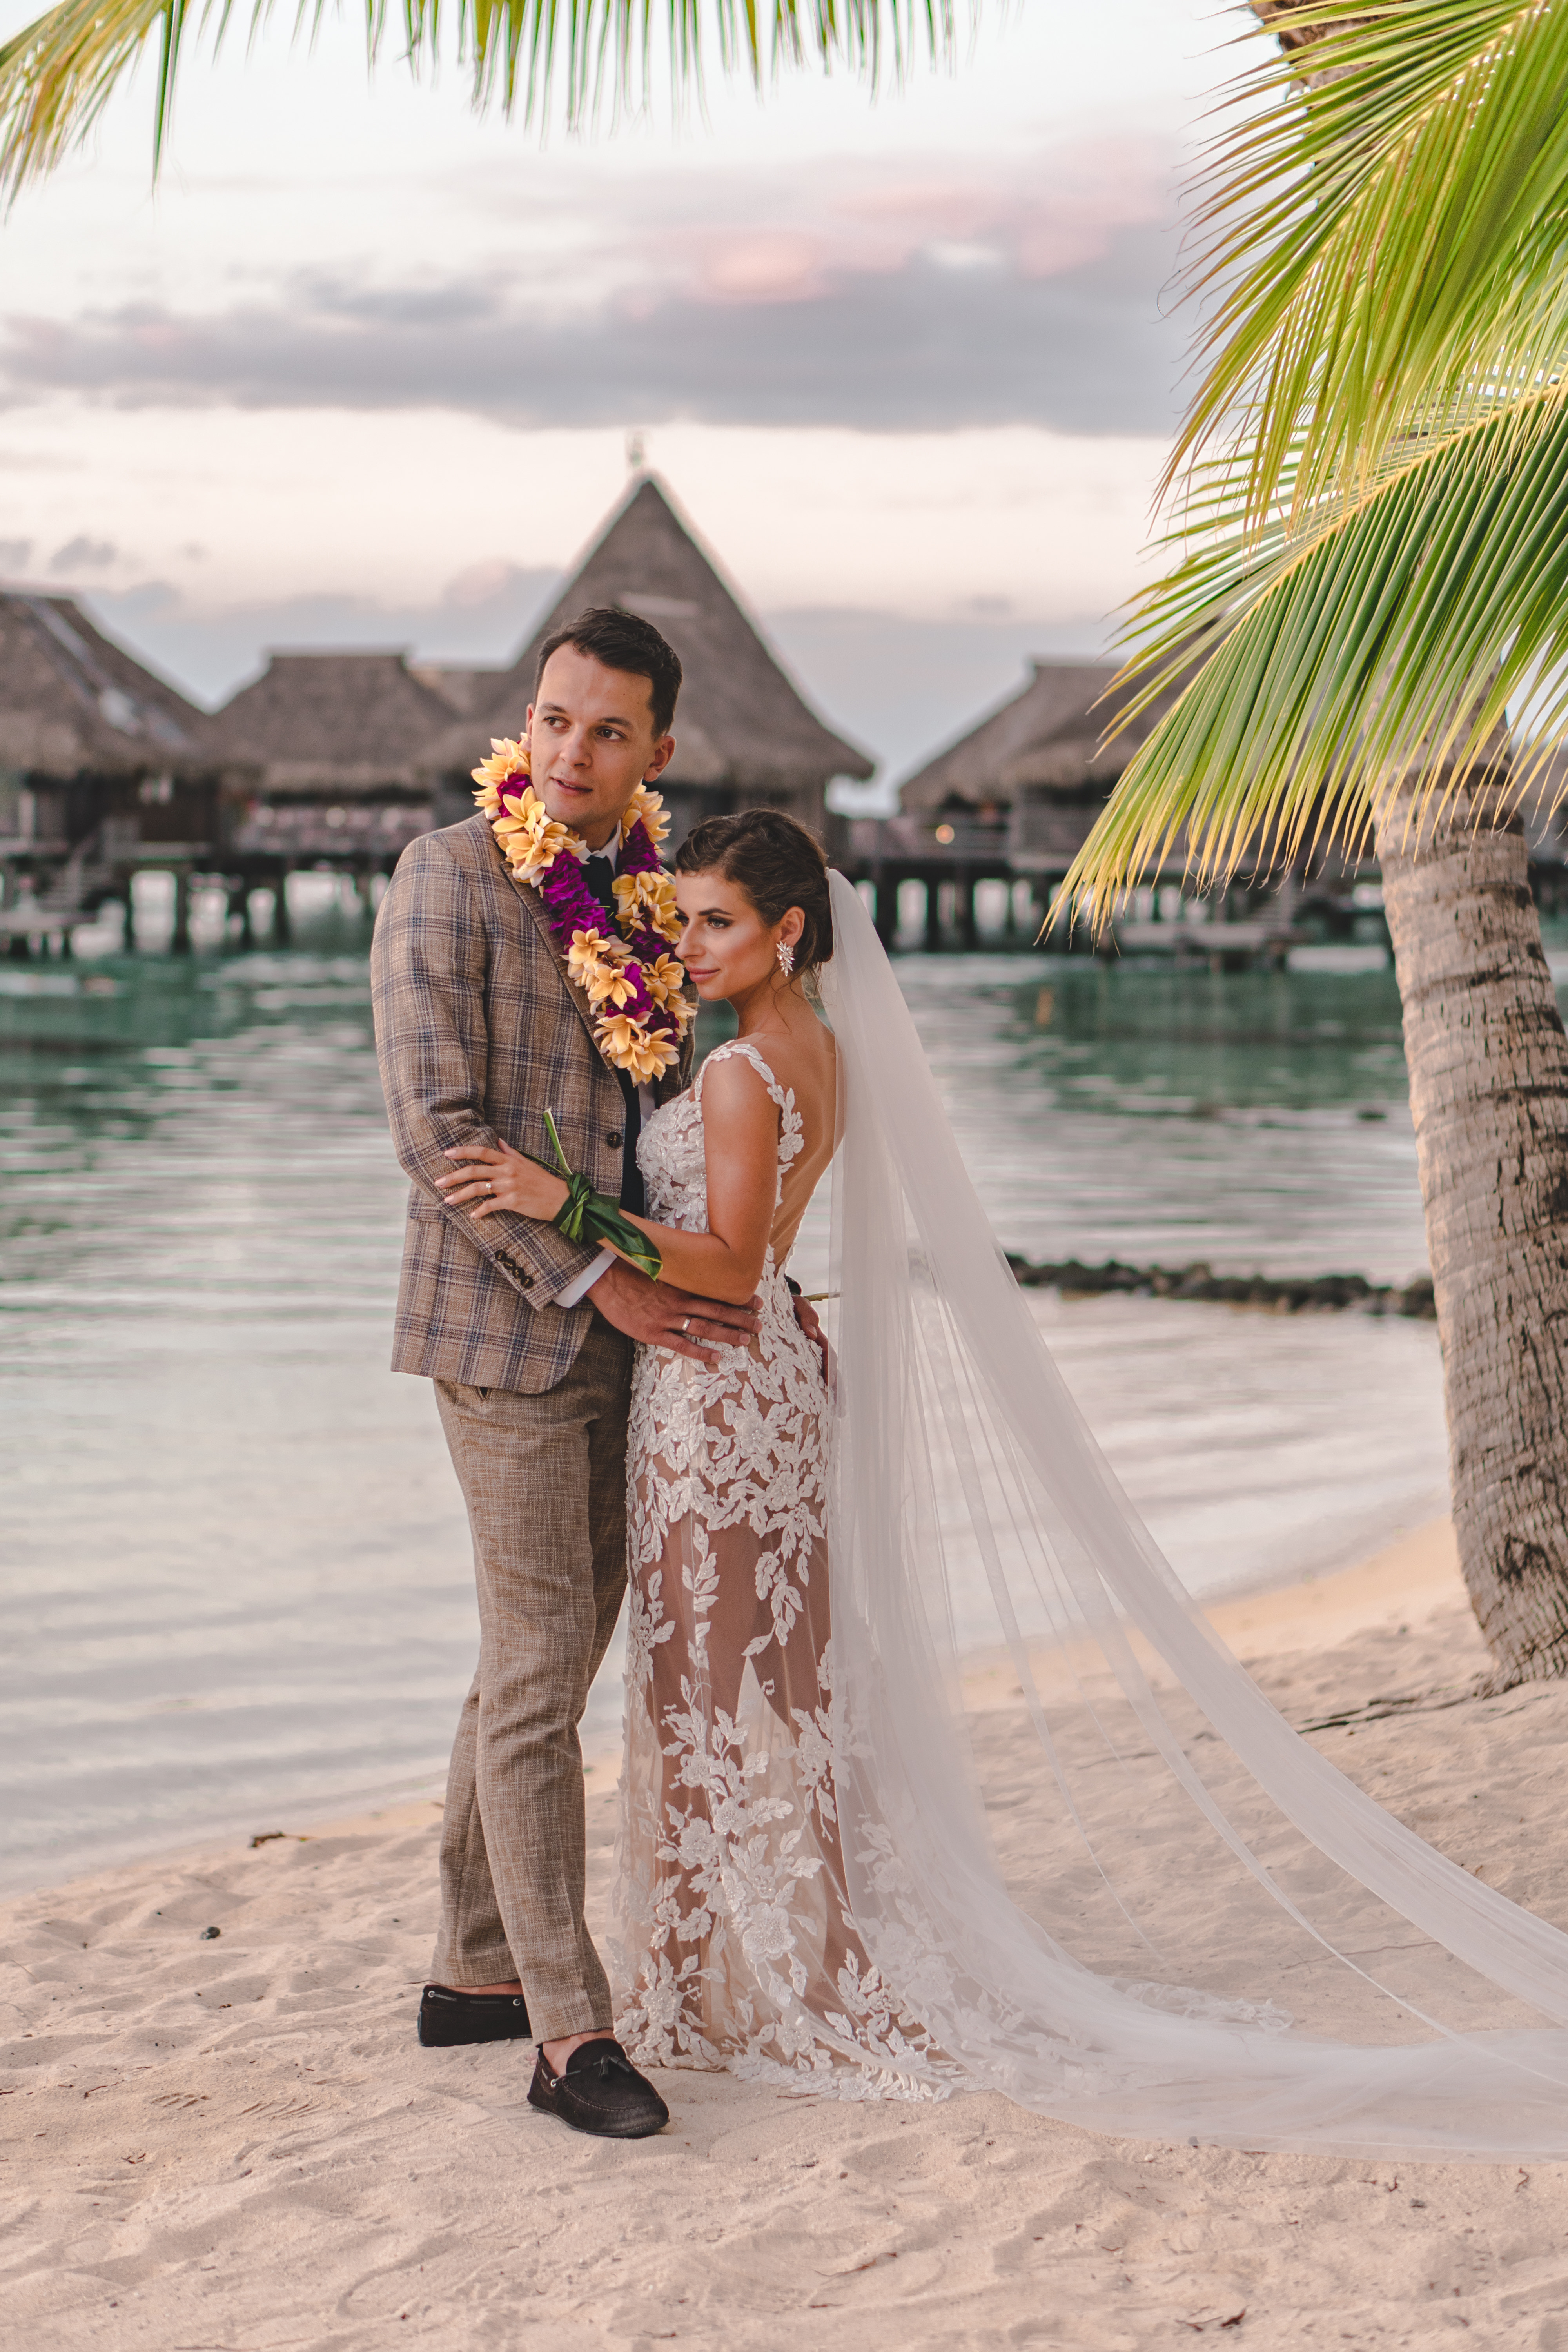 Bajkowy ślub w tropikach. To naprawdę możliwe!